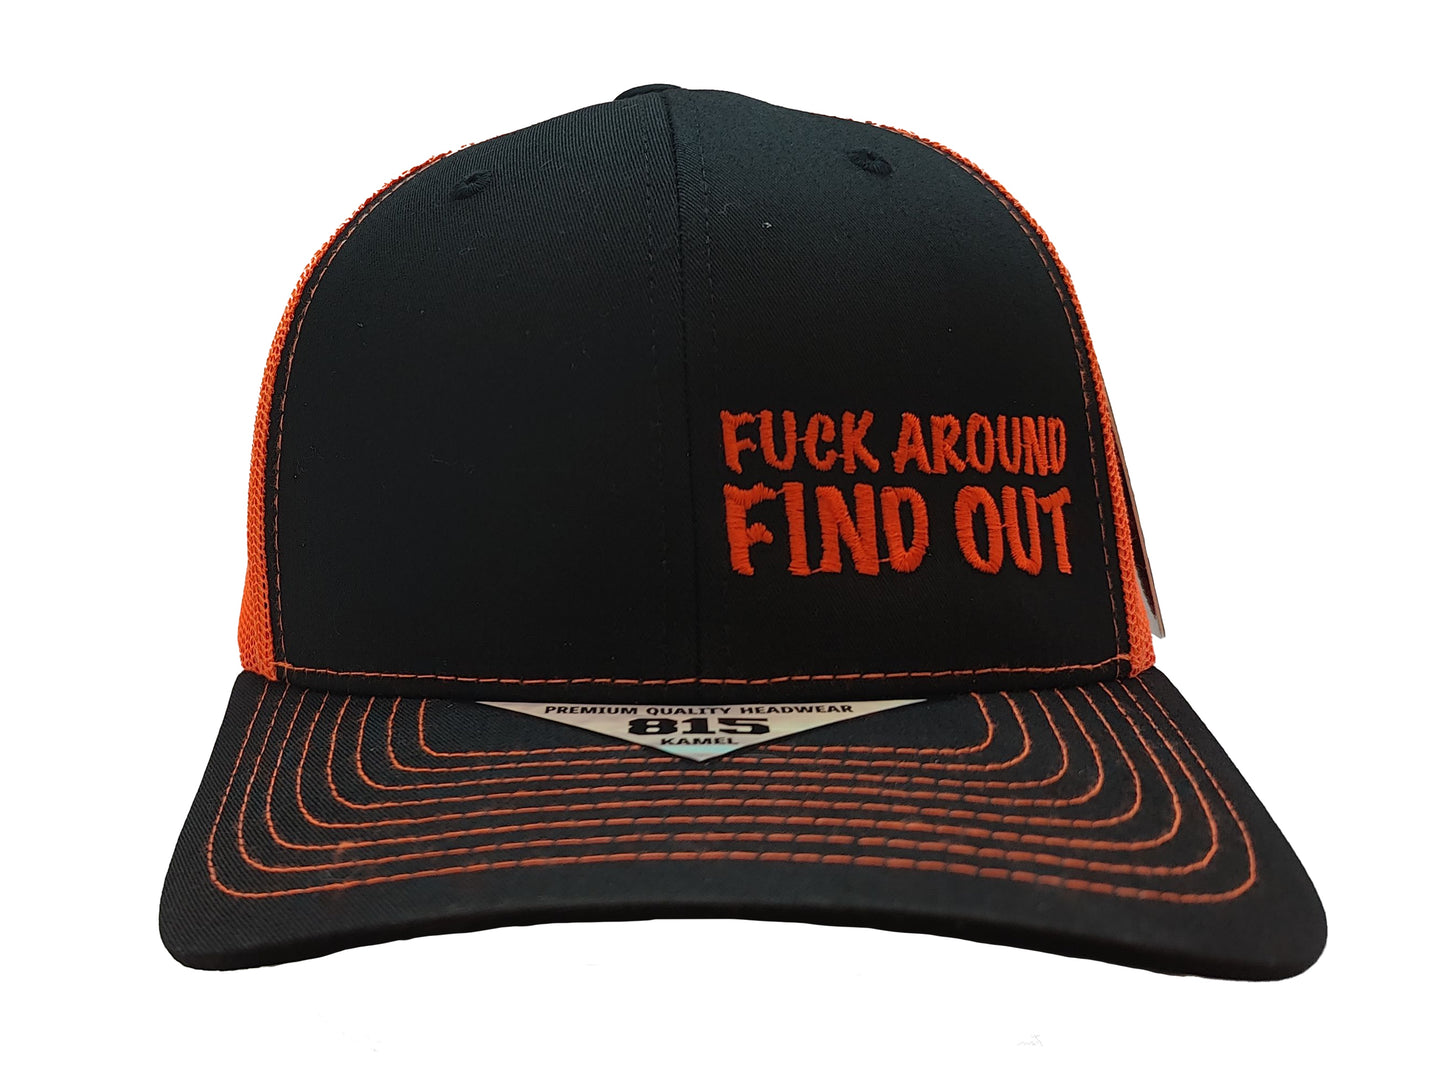 FUCK AROUND FIND OUT Kamel Adult Hat 815 Black / Orange